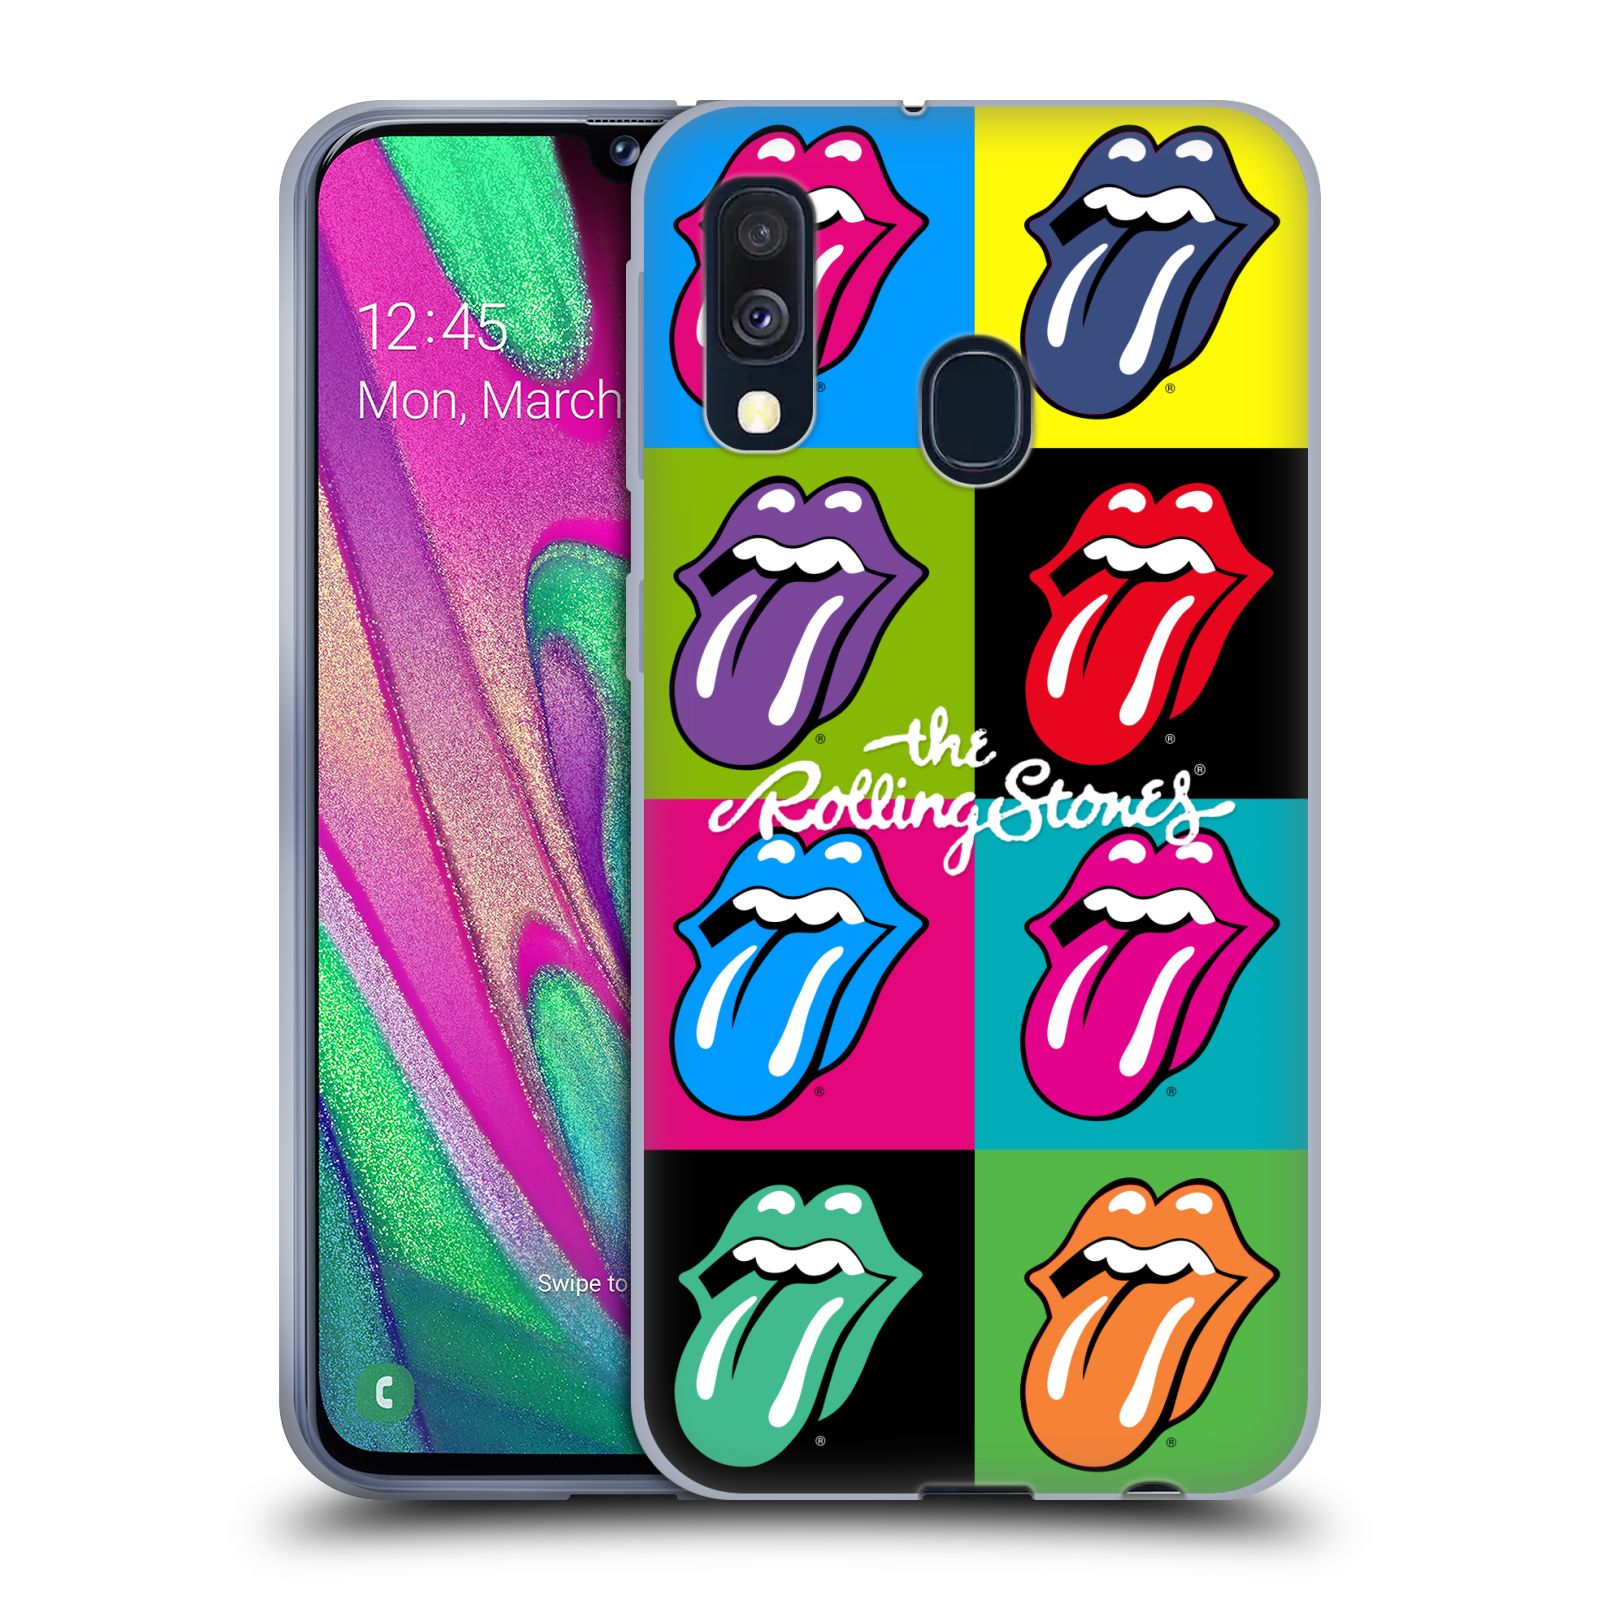 Silikonové pouzdro na mobil Samsung Galaxy A40 - Head Case - The Rolling Stones - Pop Art Vyplazené Jazyky (Silikonový kryt, obal, pouzdro na mobilní telefon Samsung Galaxy A40 A405F Dual SIM s motivem The Rolling Stones - Pop Art Vyplazené Jazyky)